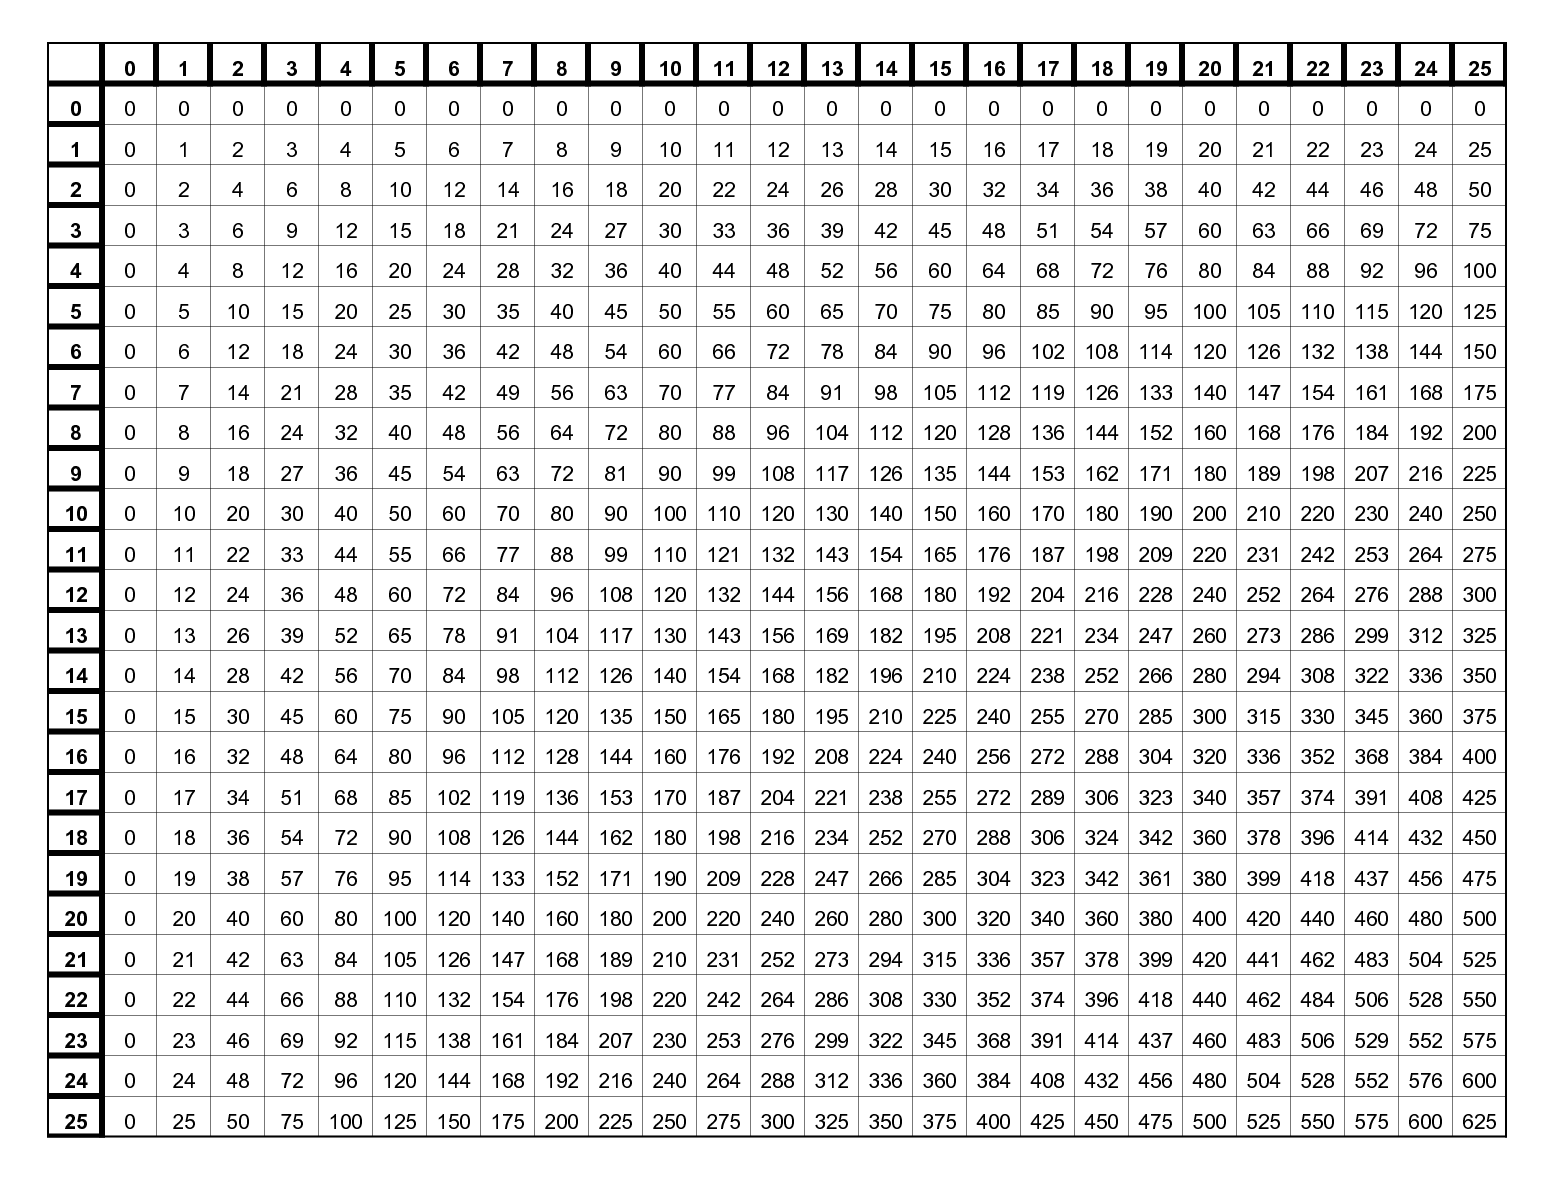 Multiplication Table PDF